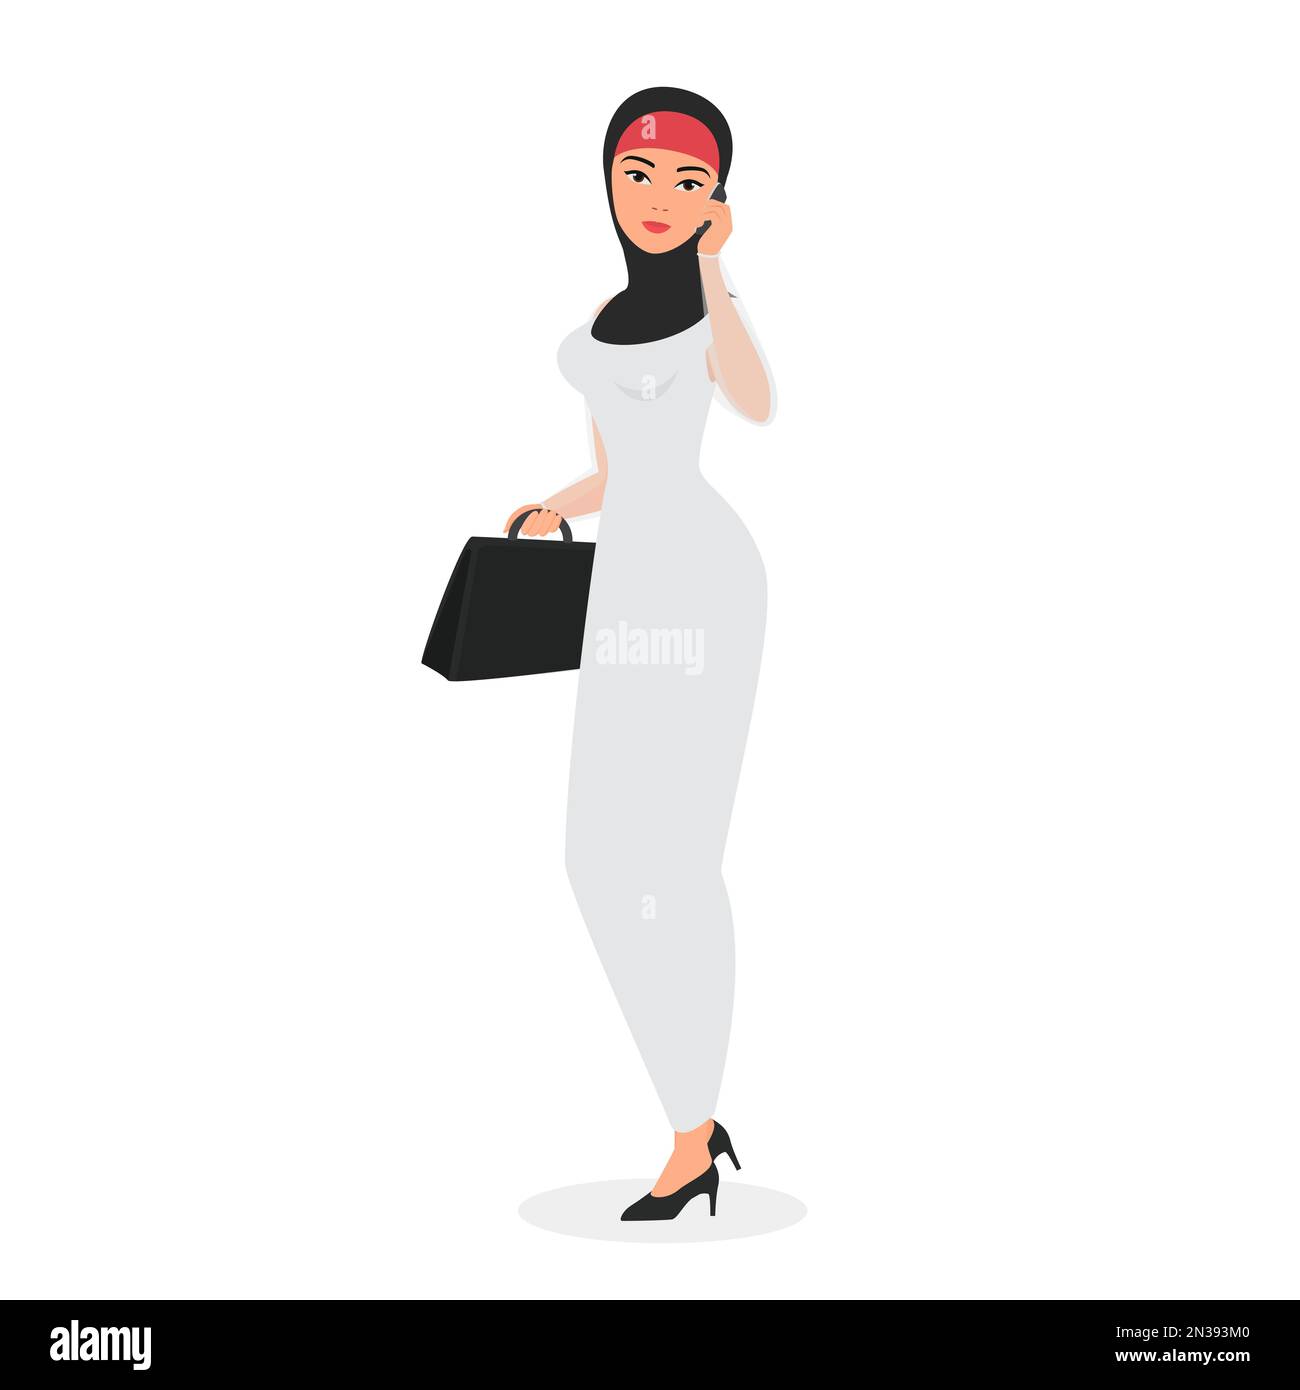 Femme d'affaires portant le hijab. Illustration d'un dessin animé vecteur pour employé de bureau, une dame d'affaires islamique Illustration de Vecteur